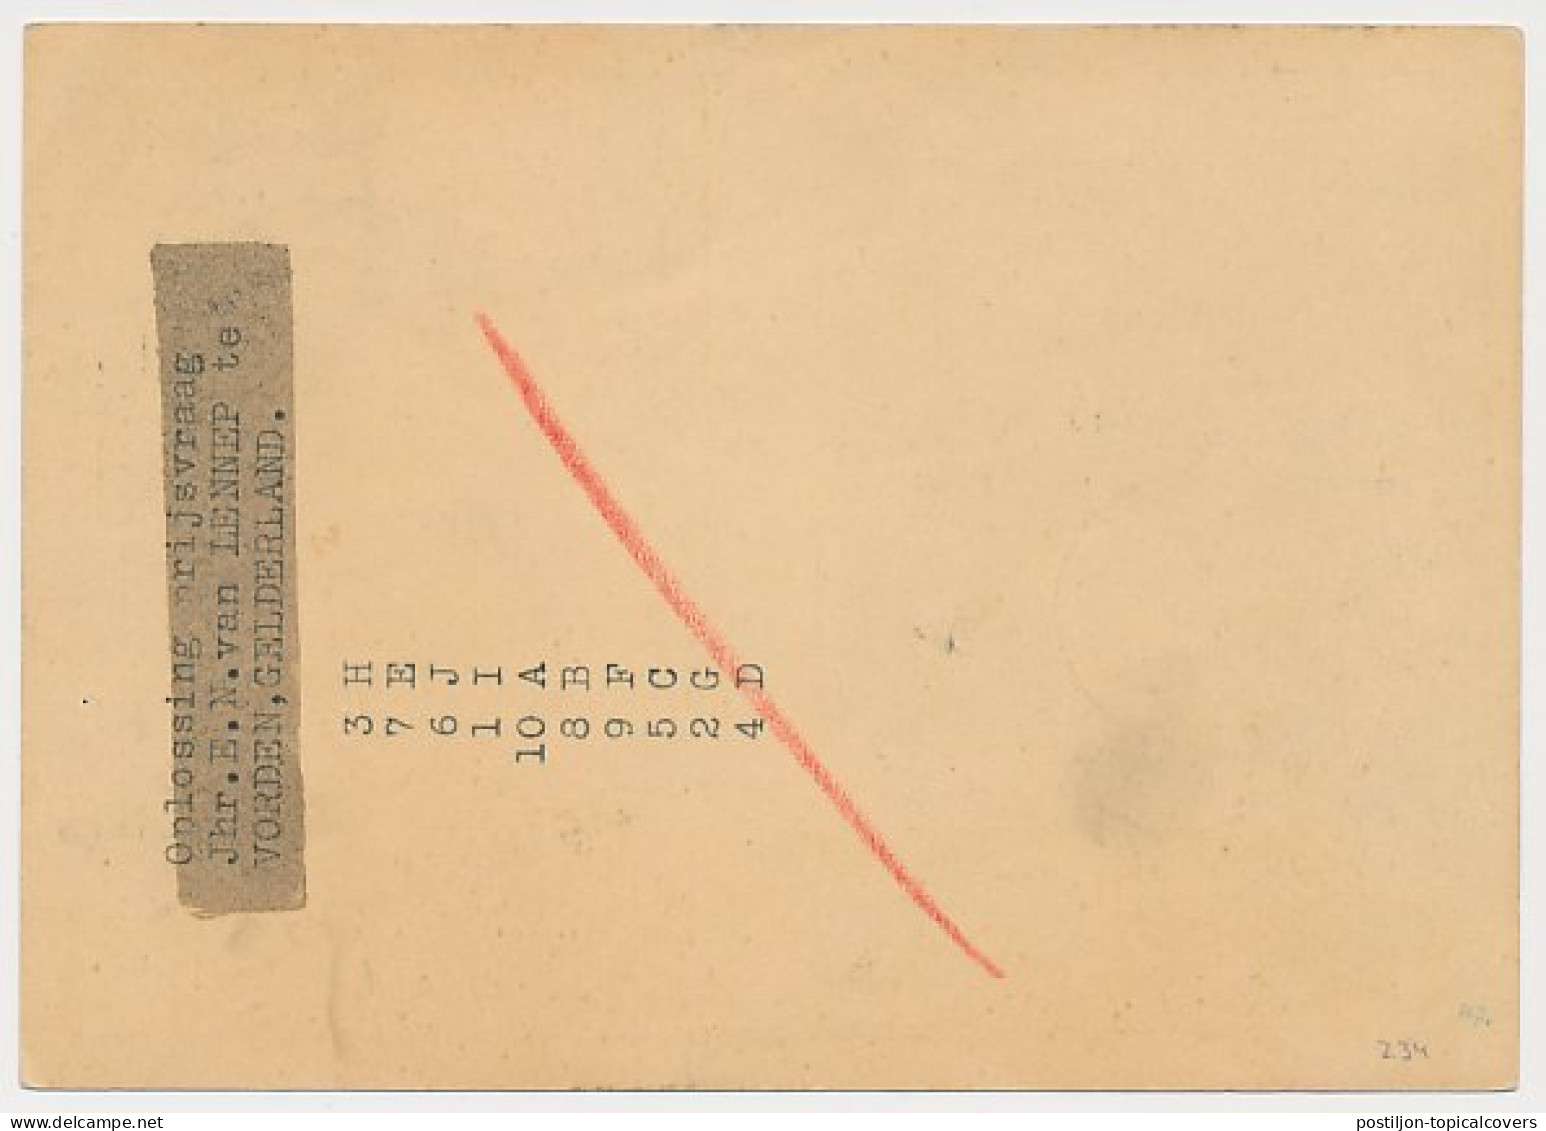 Briefkaart G. 234 Zonder Bijfr. Aan Radioprijsvraag - Zutphen - Postal Stationery